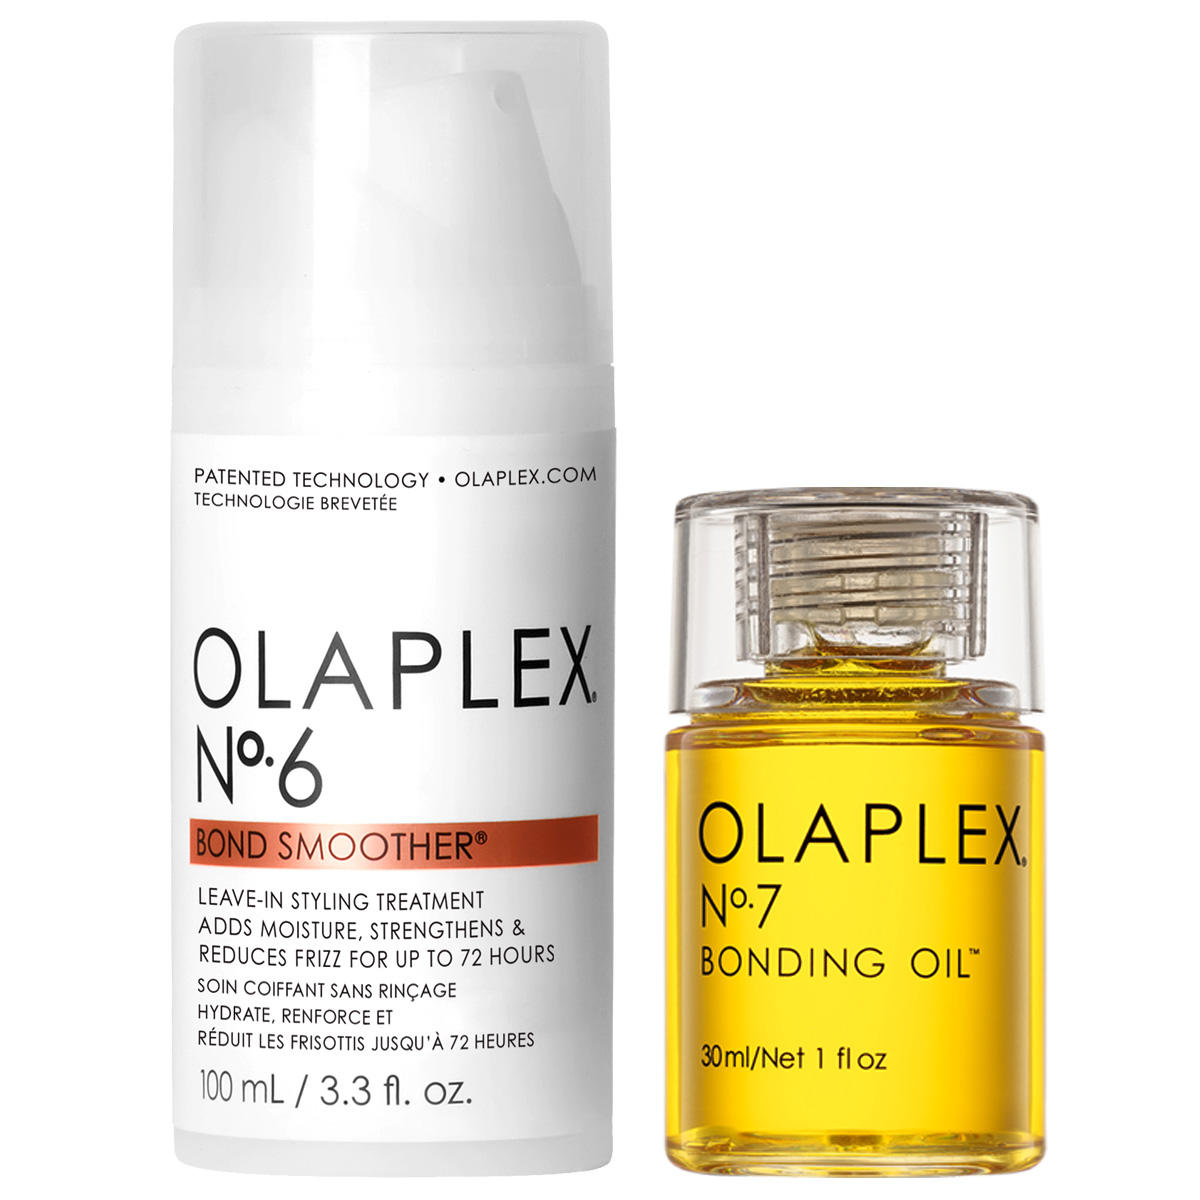 Olaplex No 6 Bond Smoother & No 7 Bonding Oil